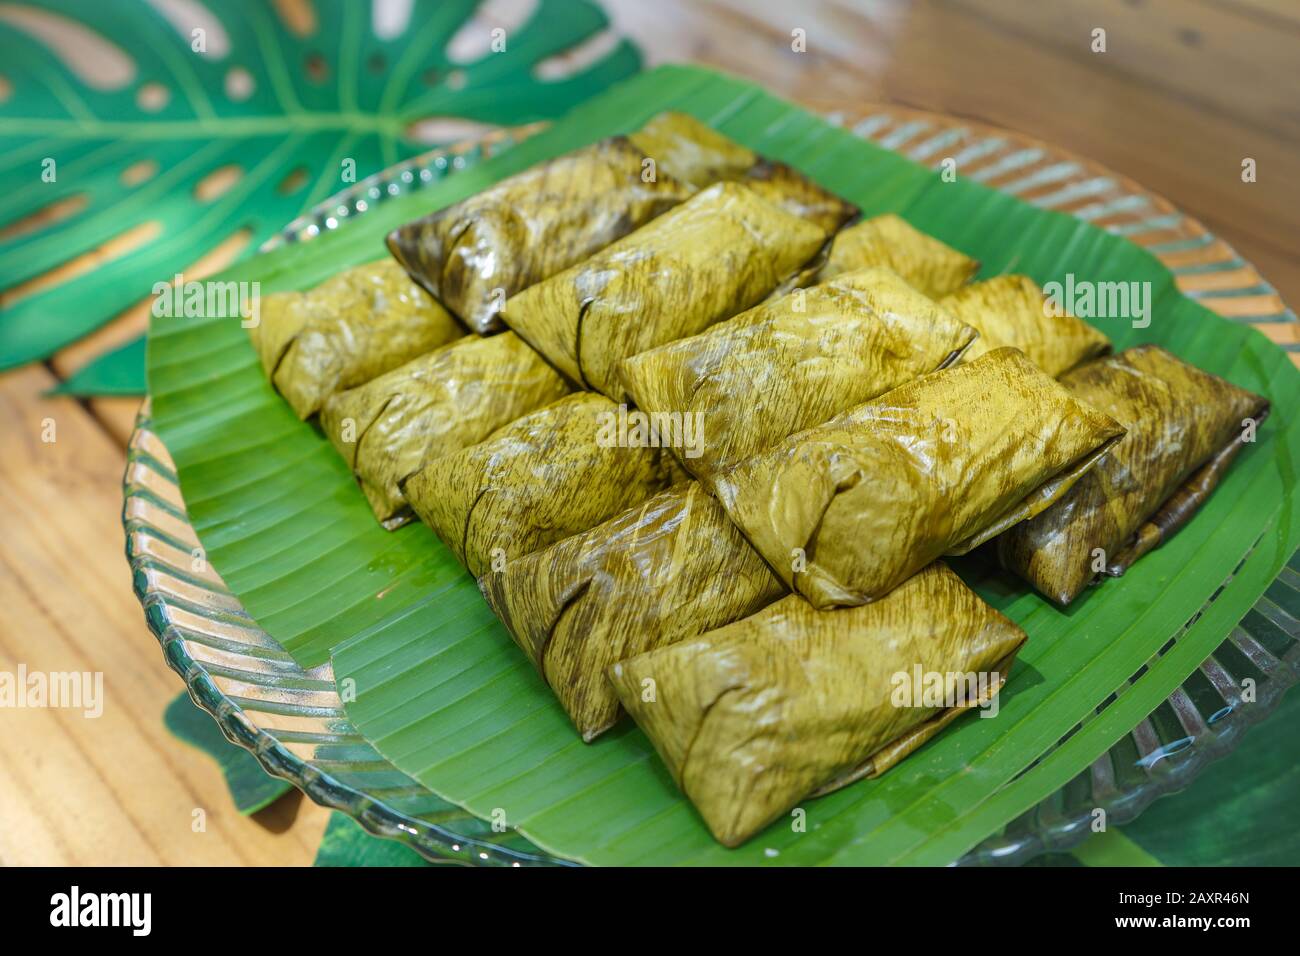 Khao tom matto o fagiolo mung al vapore con riso appiccicoso è il dessert tailandese locale e trandition. È avvolto da una foglia di banana. Foto Stock